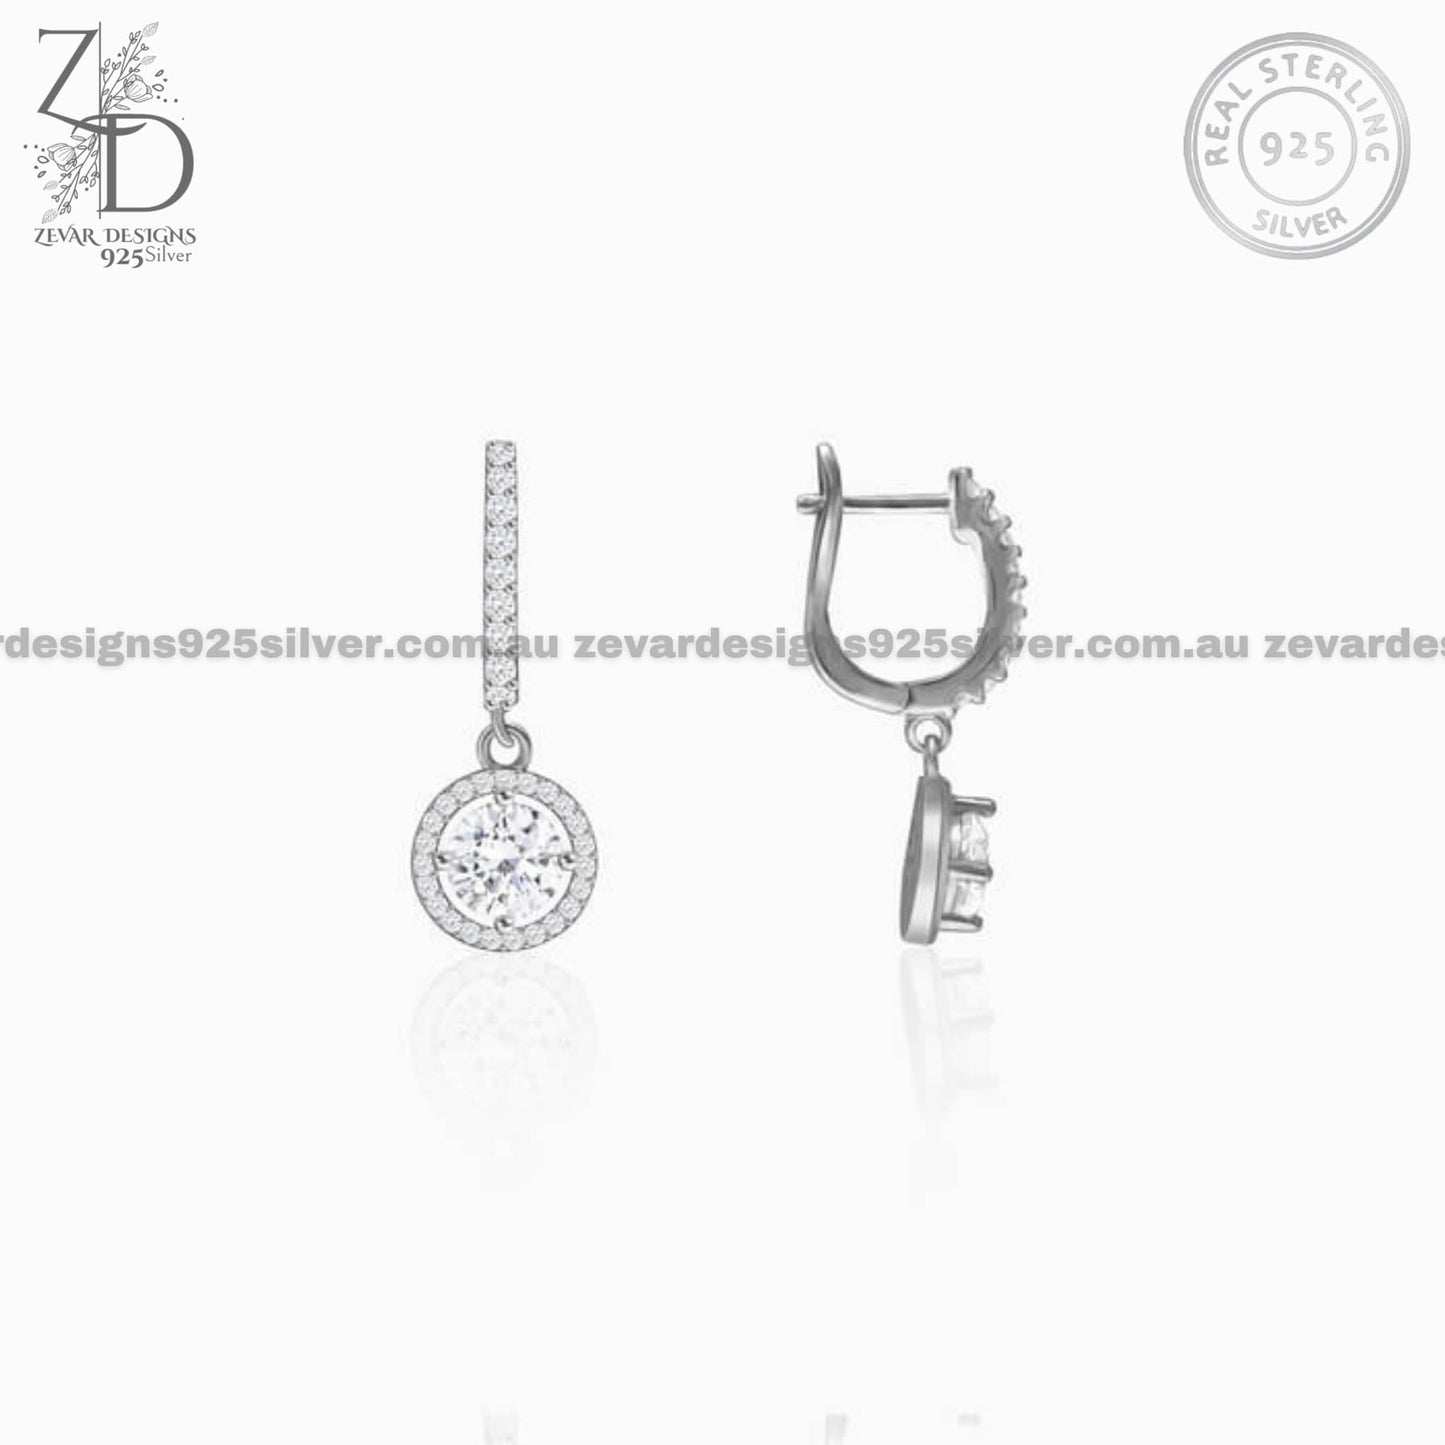 Zevar Designs 925 Silver Necklaces-Pendants AD Pendant Set With Earrings